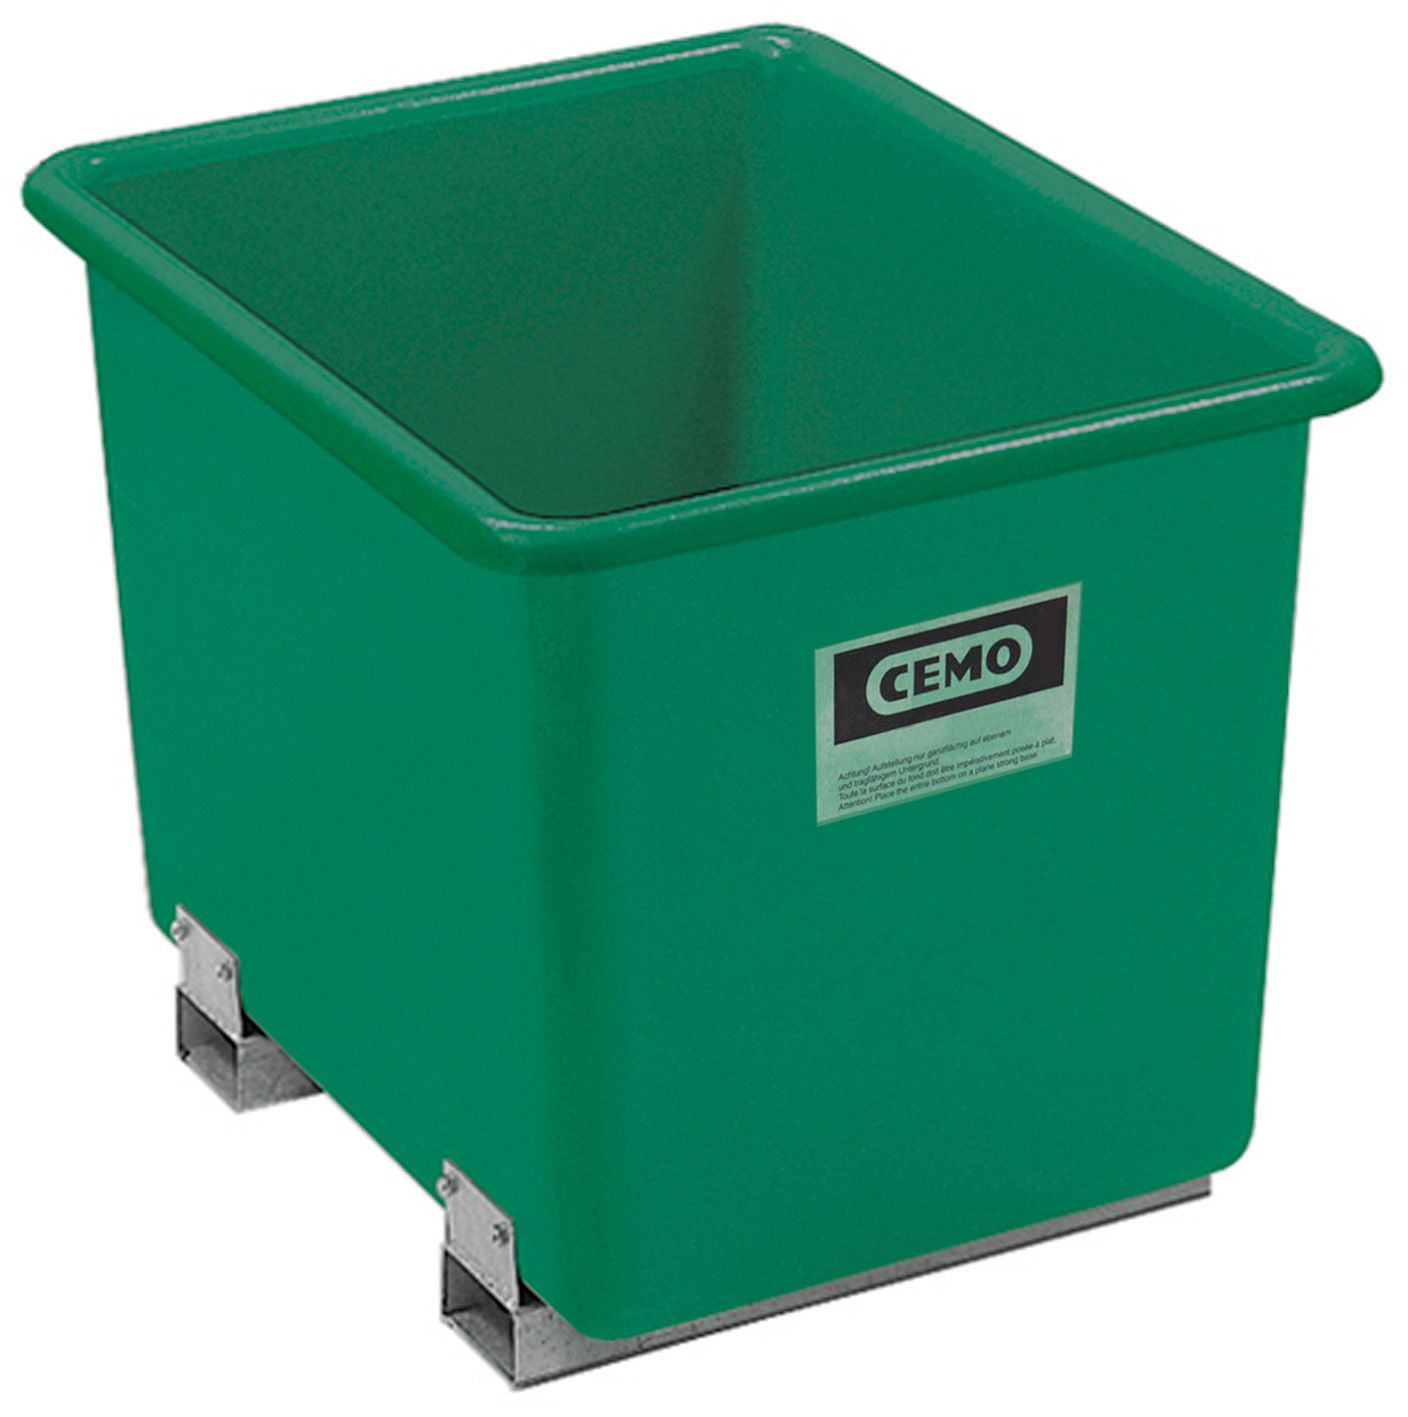 CEMO GFK-Rechteckbehälter 1500 l mit Staplertaschen, grün - 1209